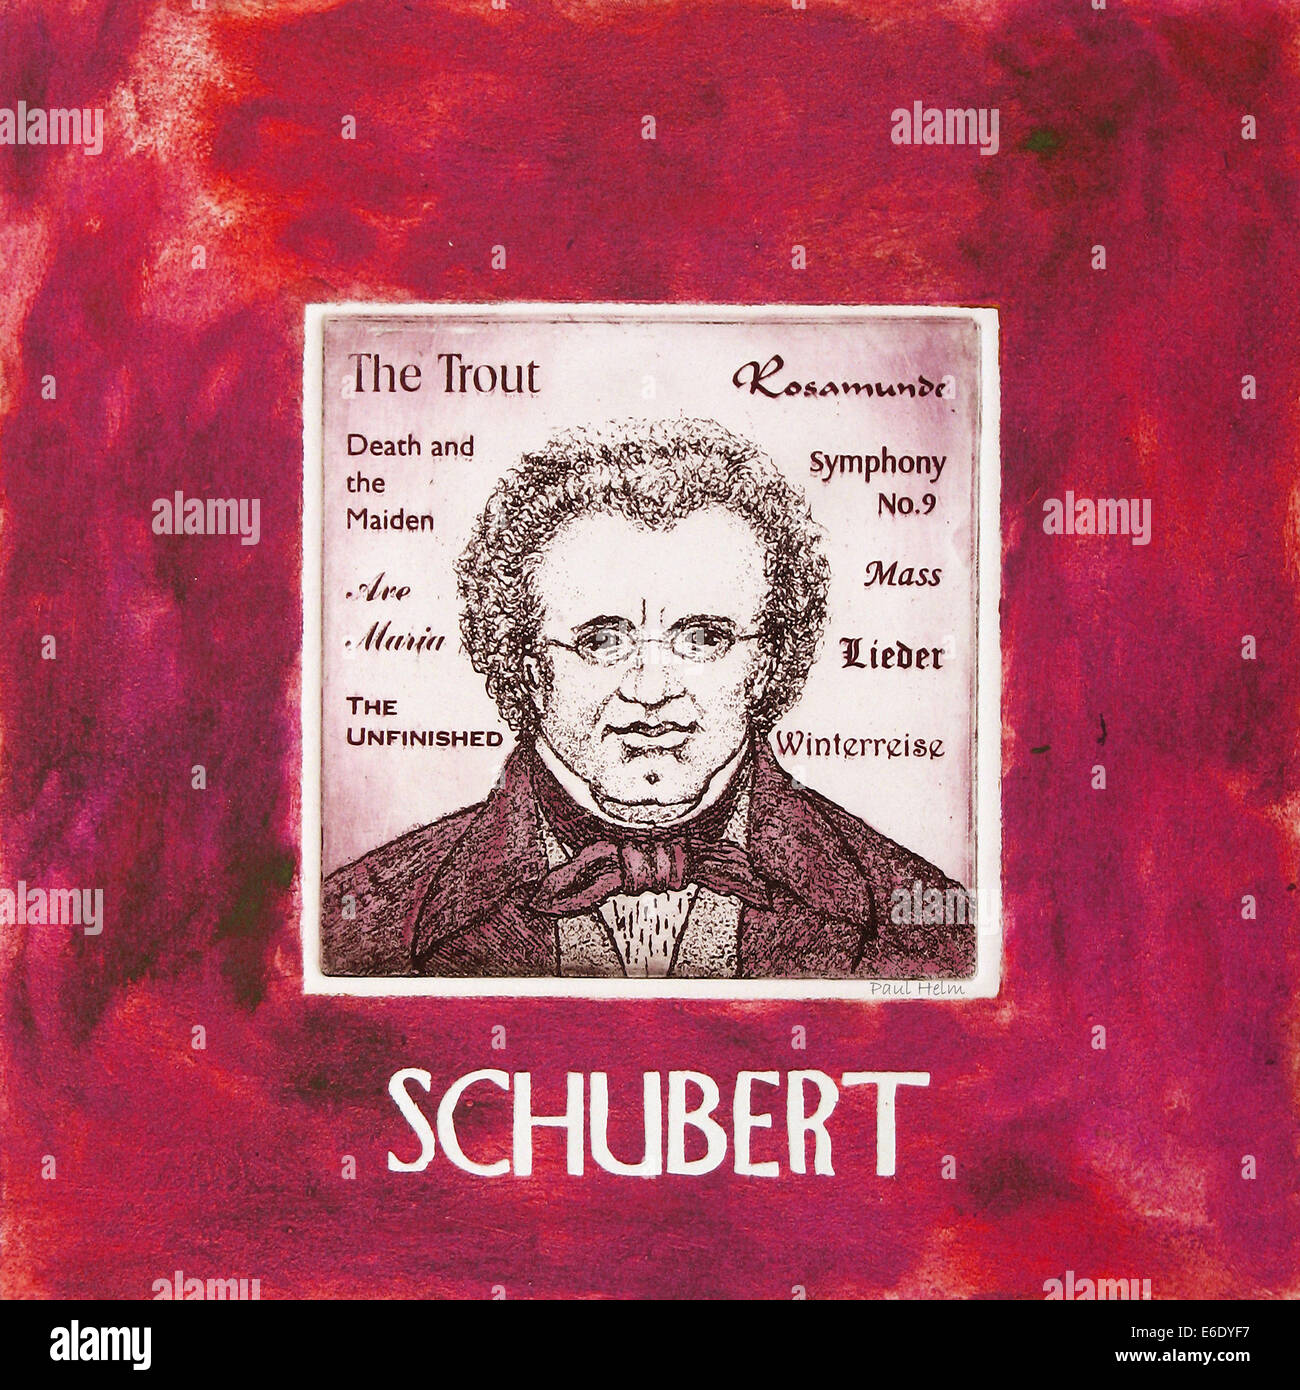 Franz Schubert, Austrian composer, portrait, 1797 – 1828 Stock Photo